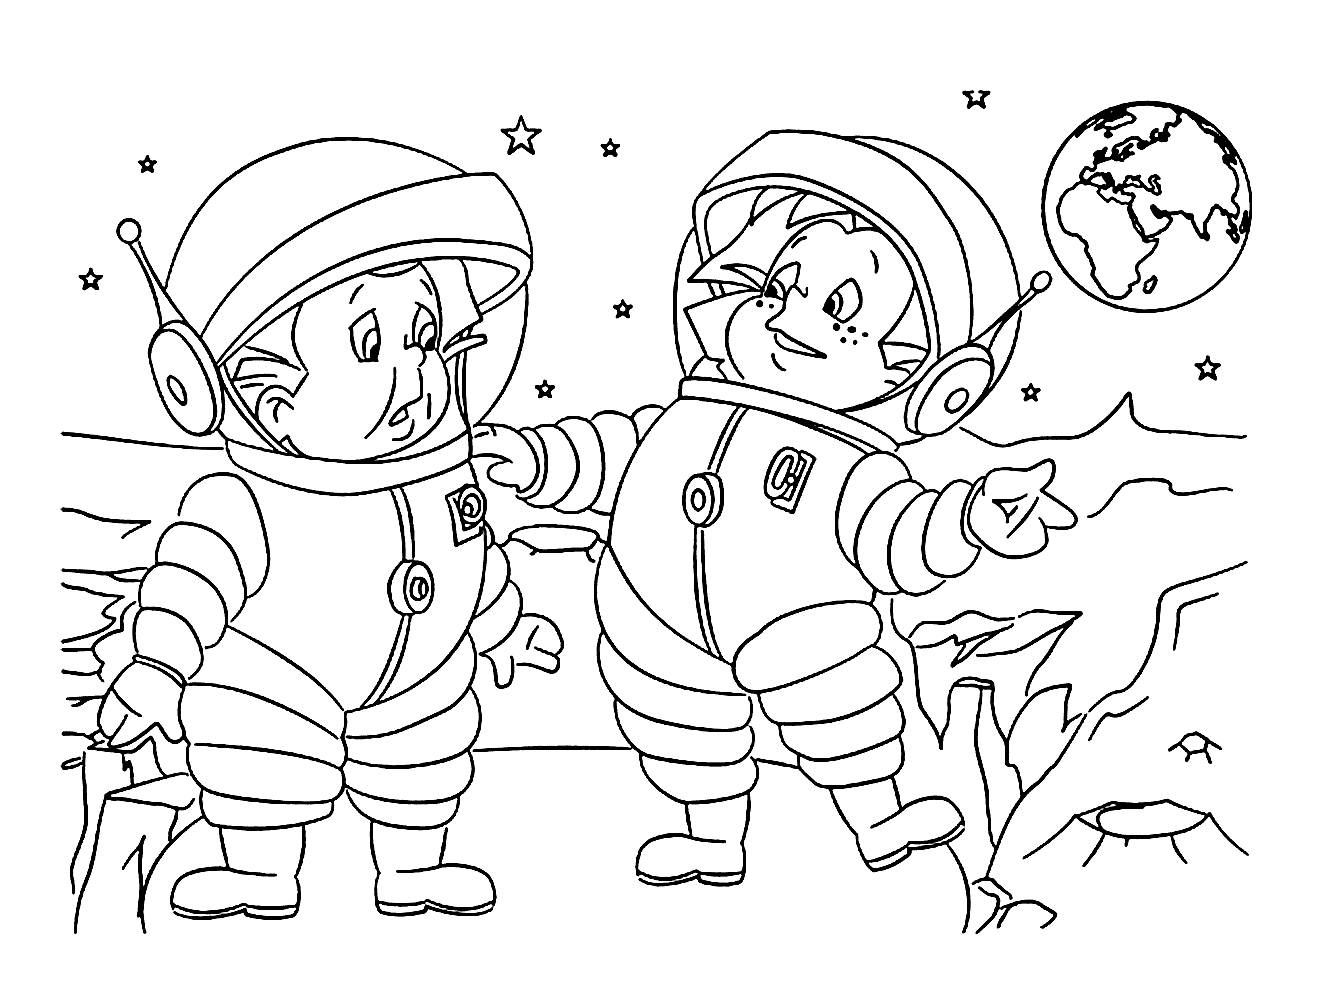 Young cosmonauts